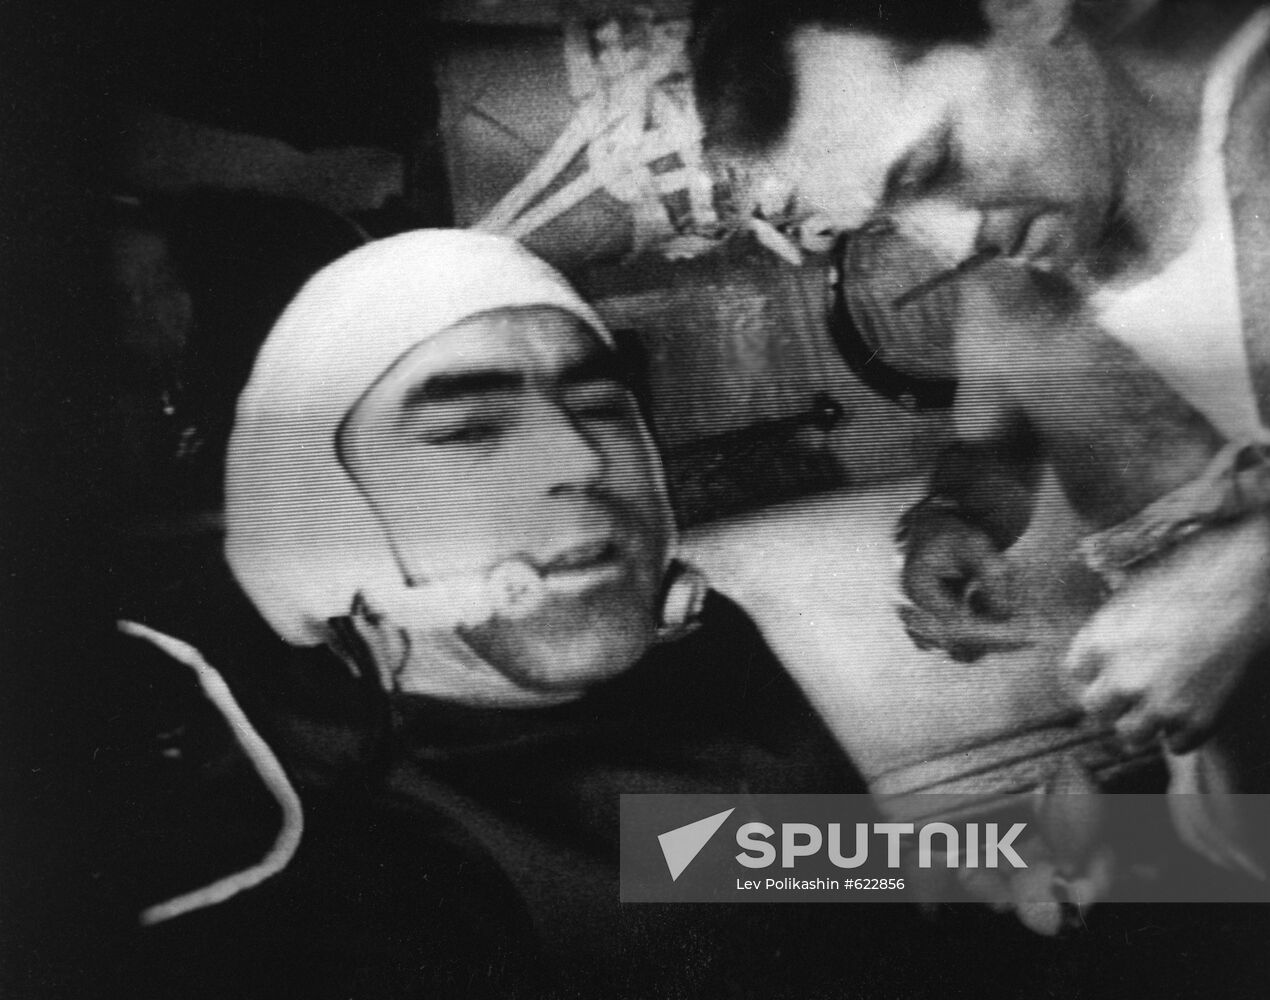 Cosmonauts Andriyan Nikolayev and Vitaly Sevastyanov aboard Soyuz 9 spaceship